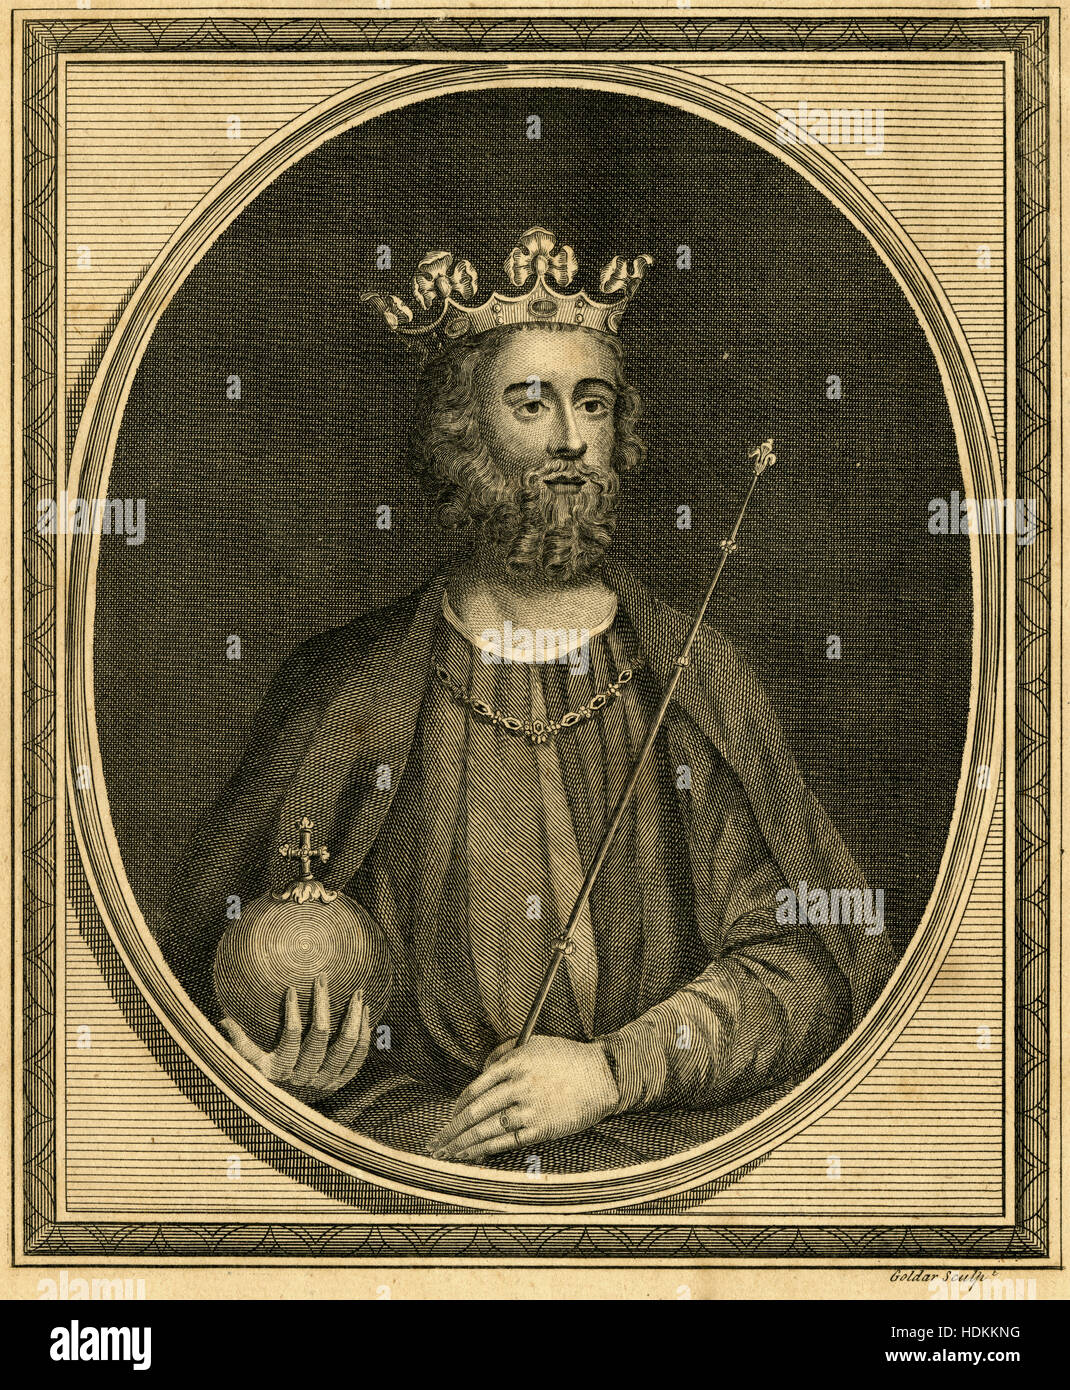 Gravure ancienne 1787, le roi Édouard II. Édouard II (1284-1327), également appelé Edward de Caernarfon, était roi d'Angleterre à partir de 1307 jusqu'à ce qu'il a été déposé en janvier 1327. SOURCE : gravure originale. Banque D'Images